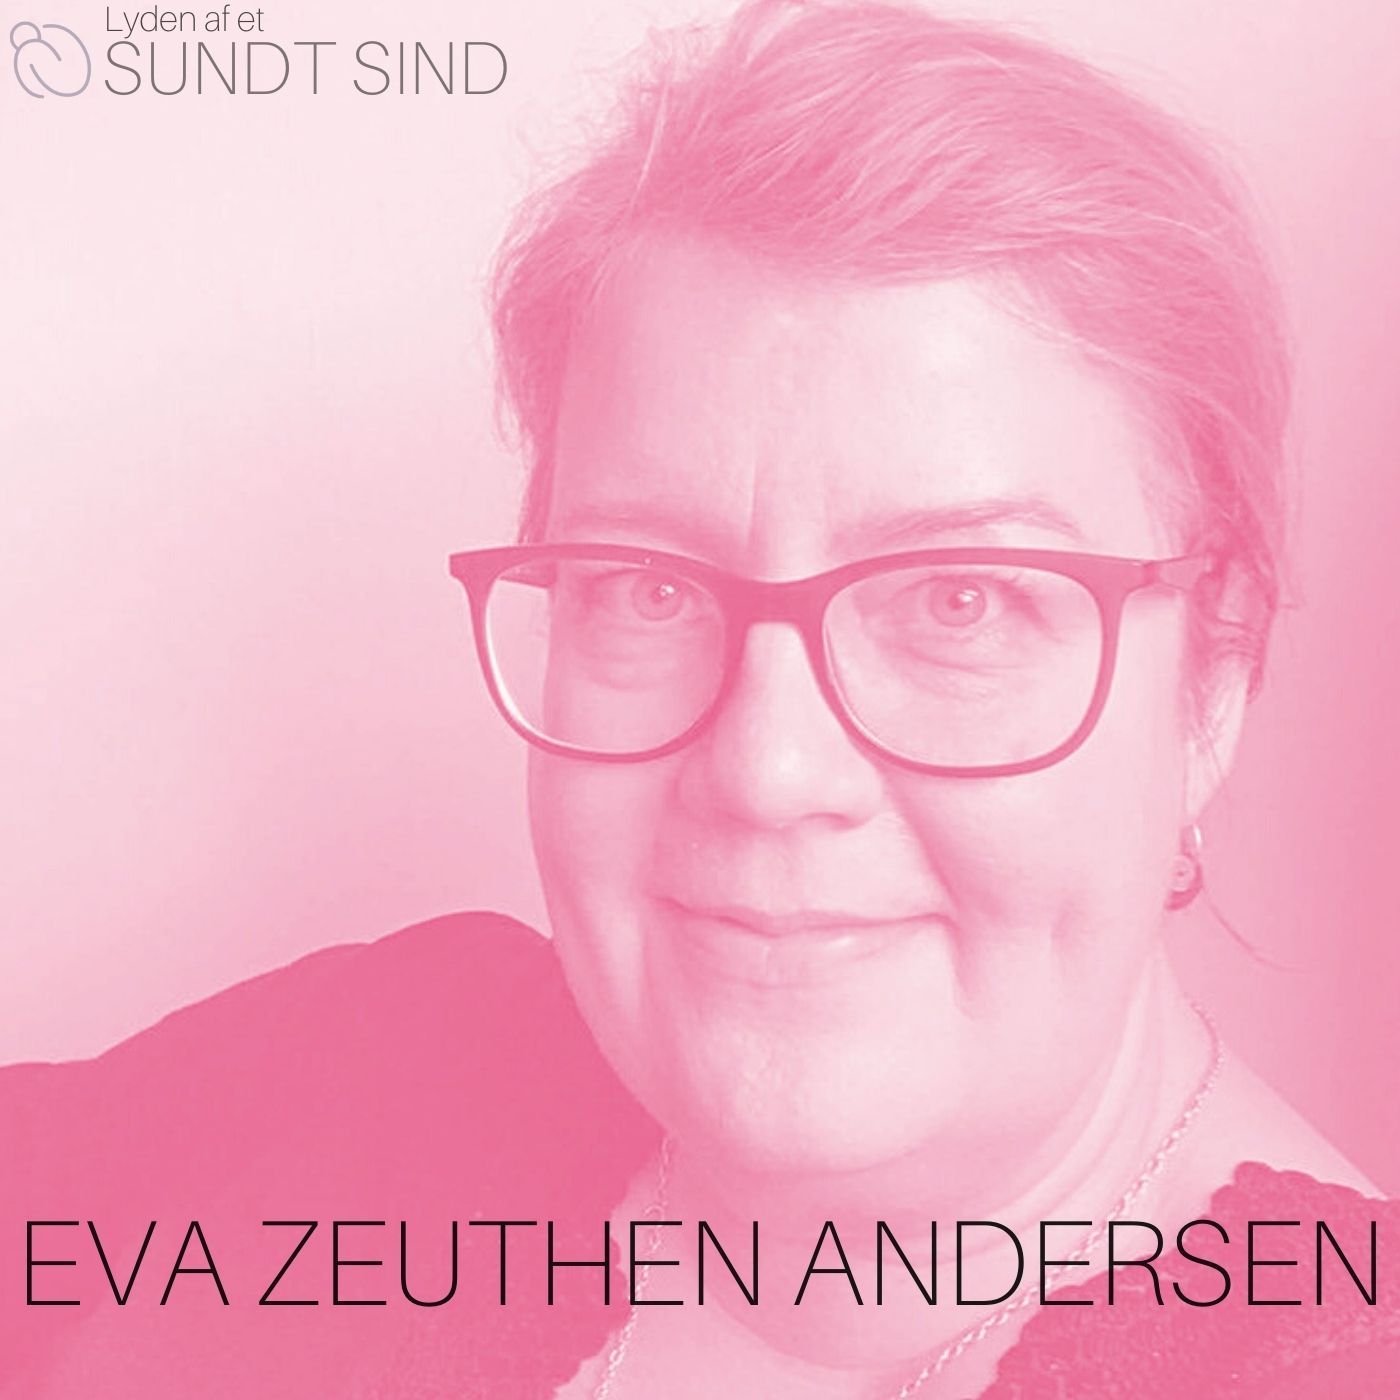 14. Eva Zeuthen Andersen - Om håb, identitet & personlig recovery